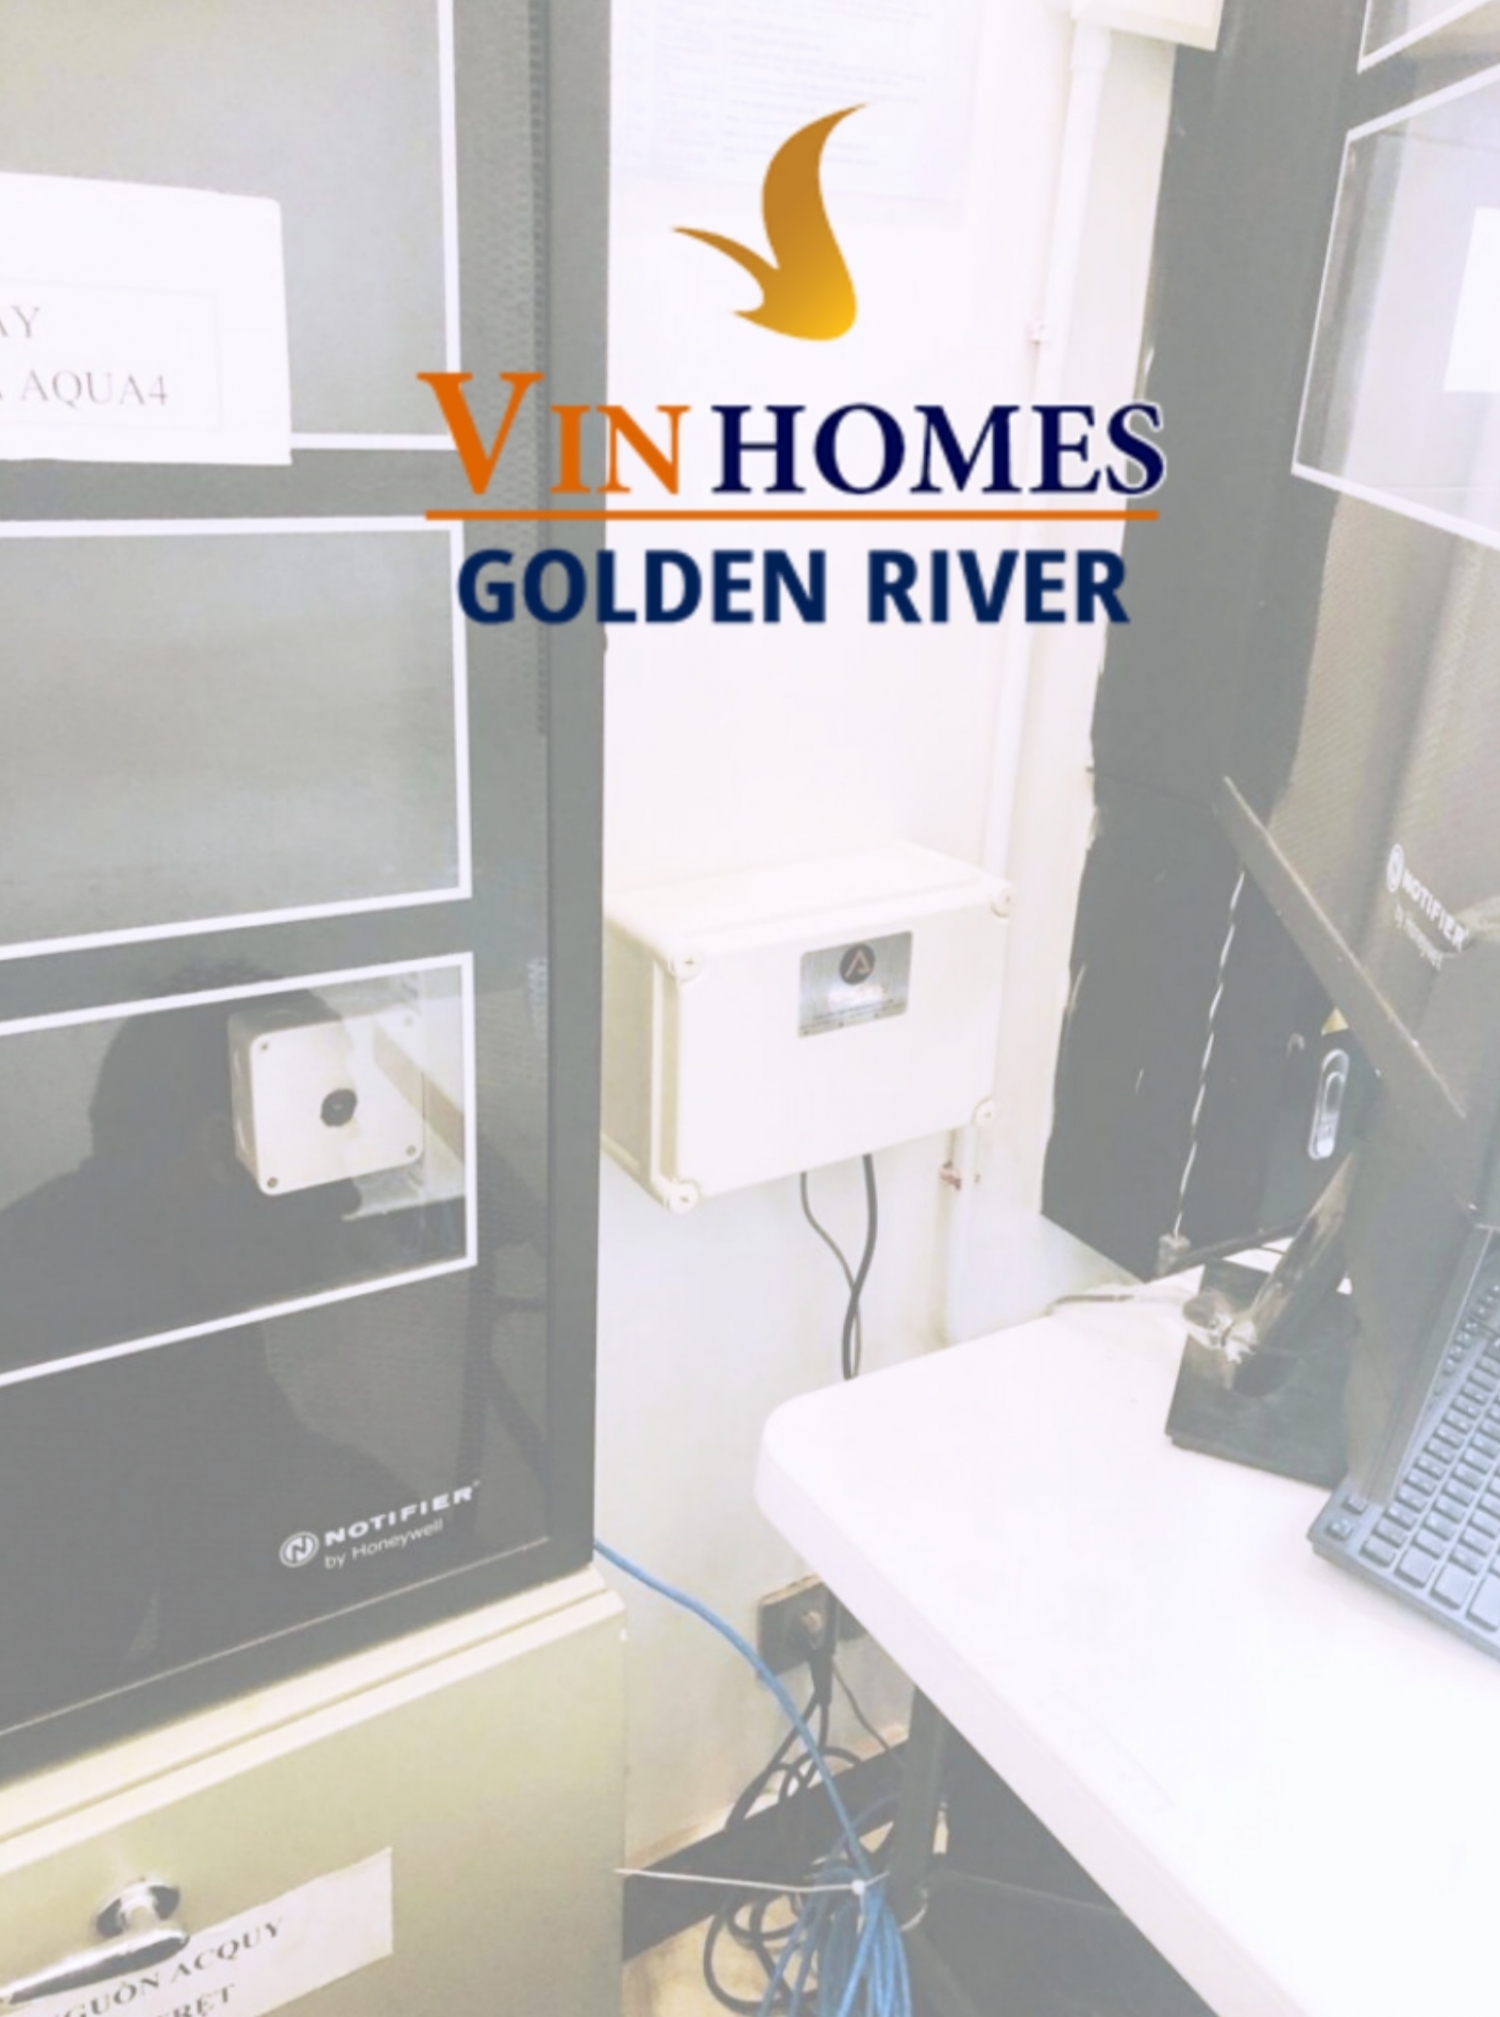 Vinhomes Golden River SMS Alarm System